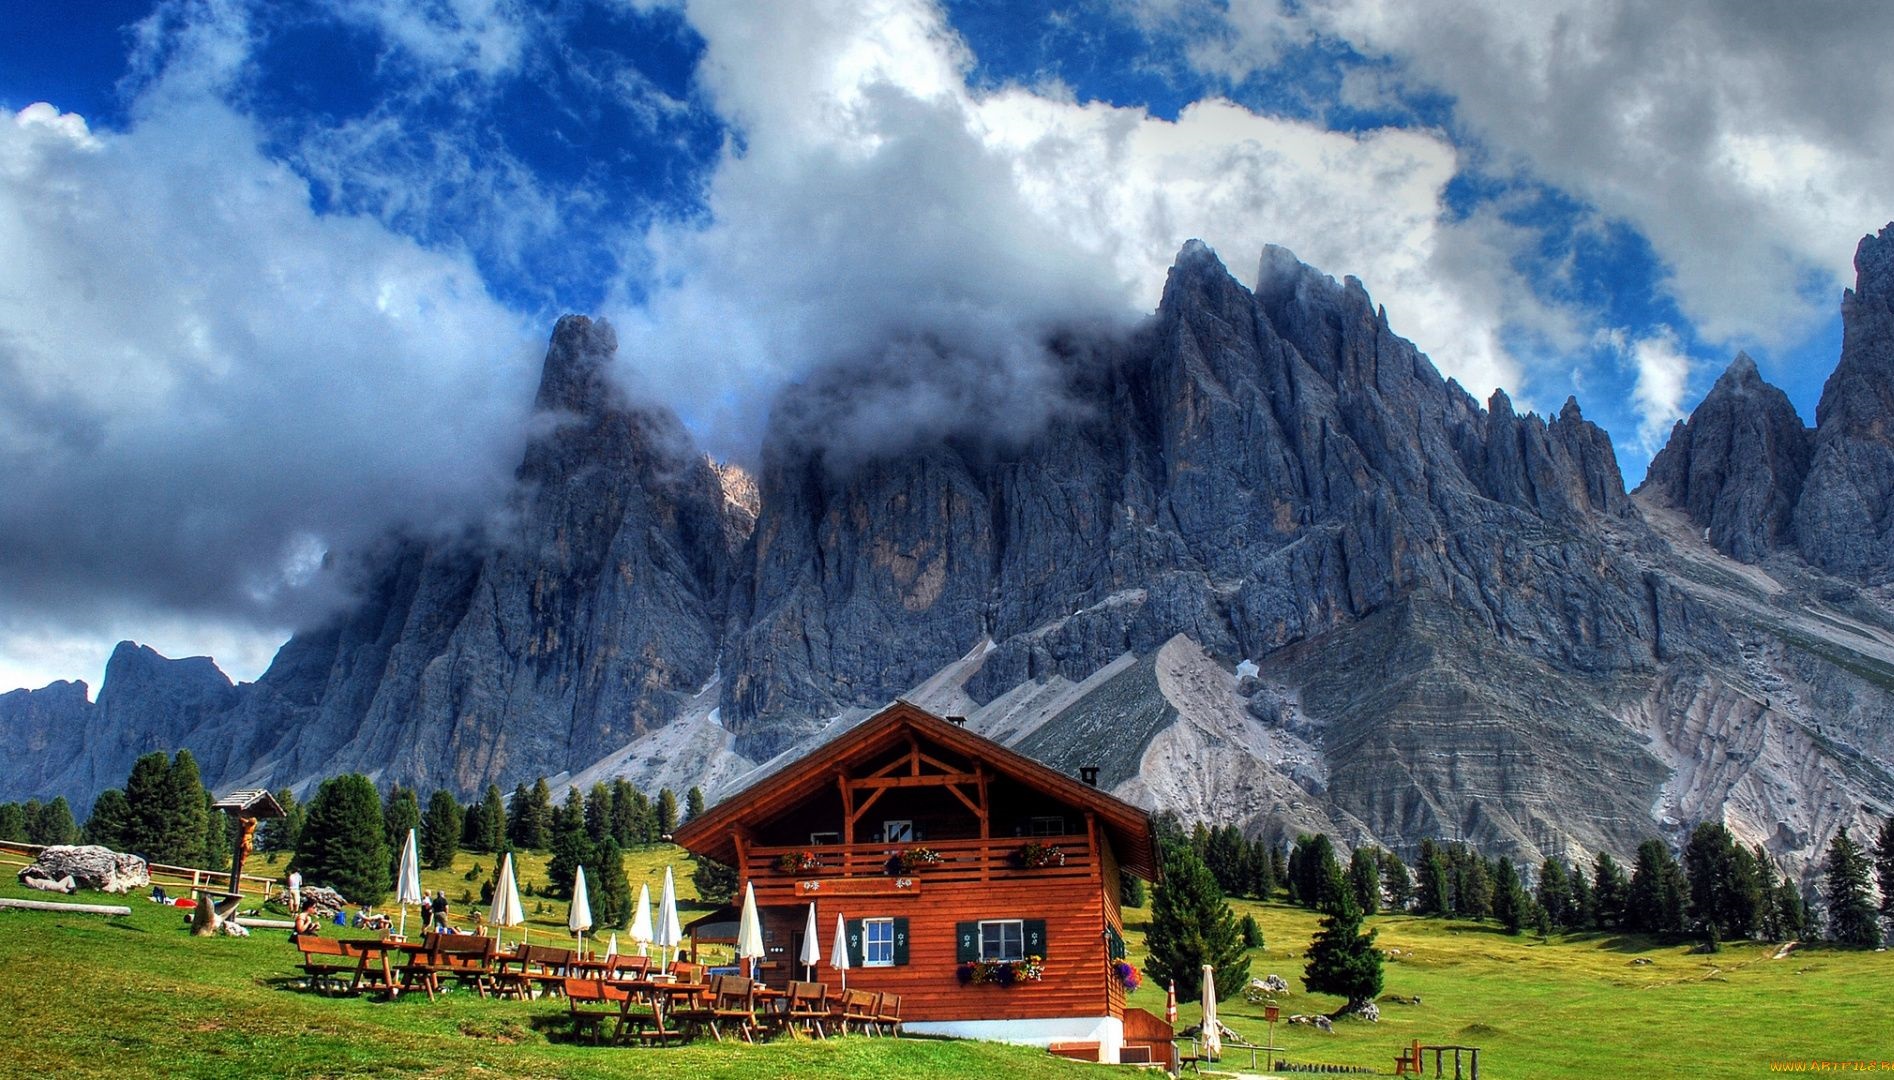 خانه ی چوبی - عکس طبیعت زیبای سوئیس